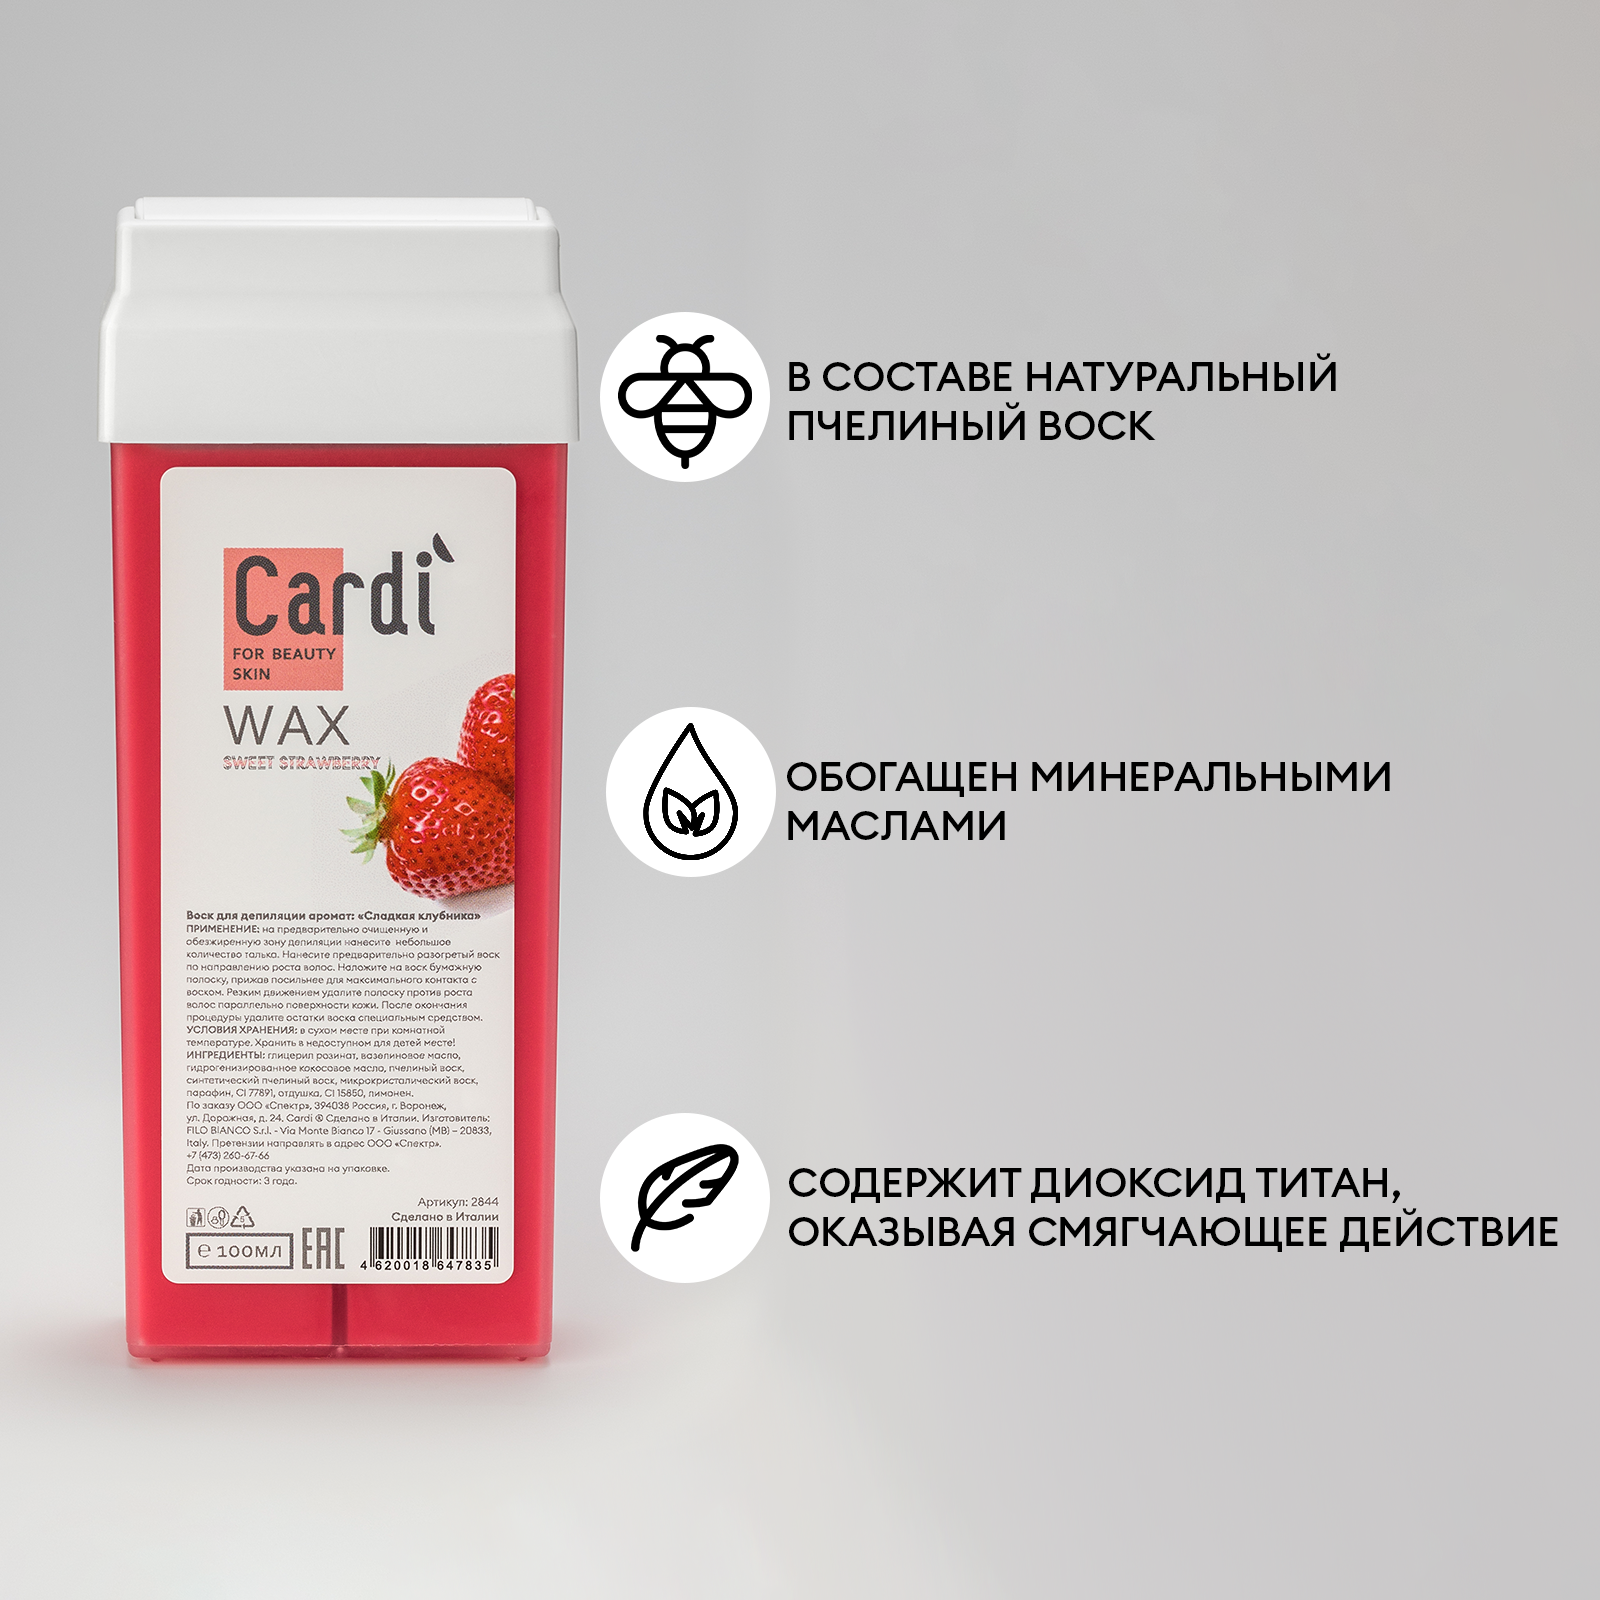 Воск для депиляции Cardi (аромат: Сладкая клубника), 100 мл